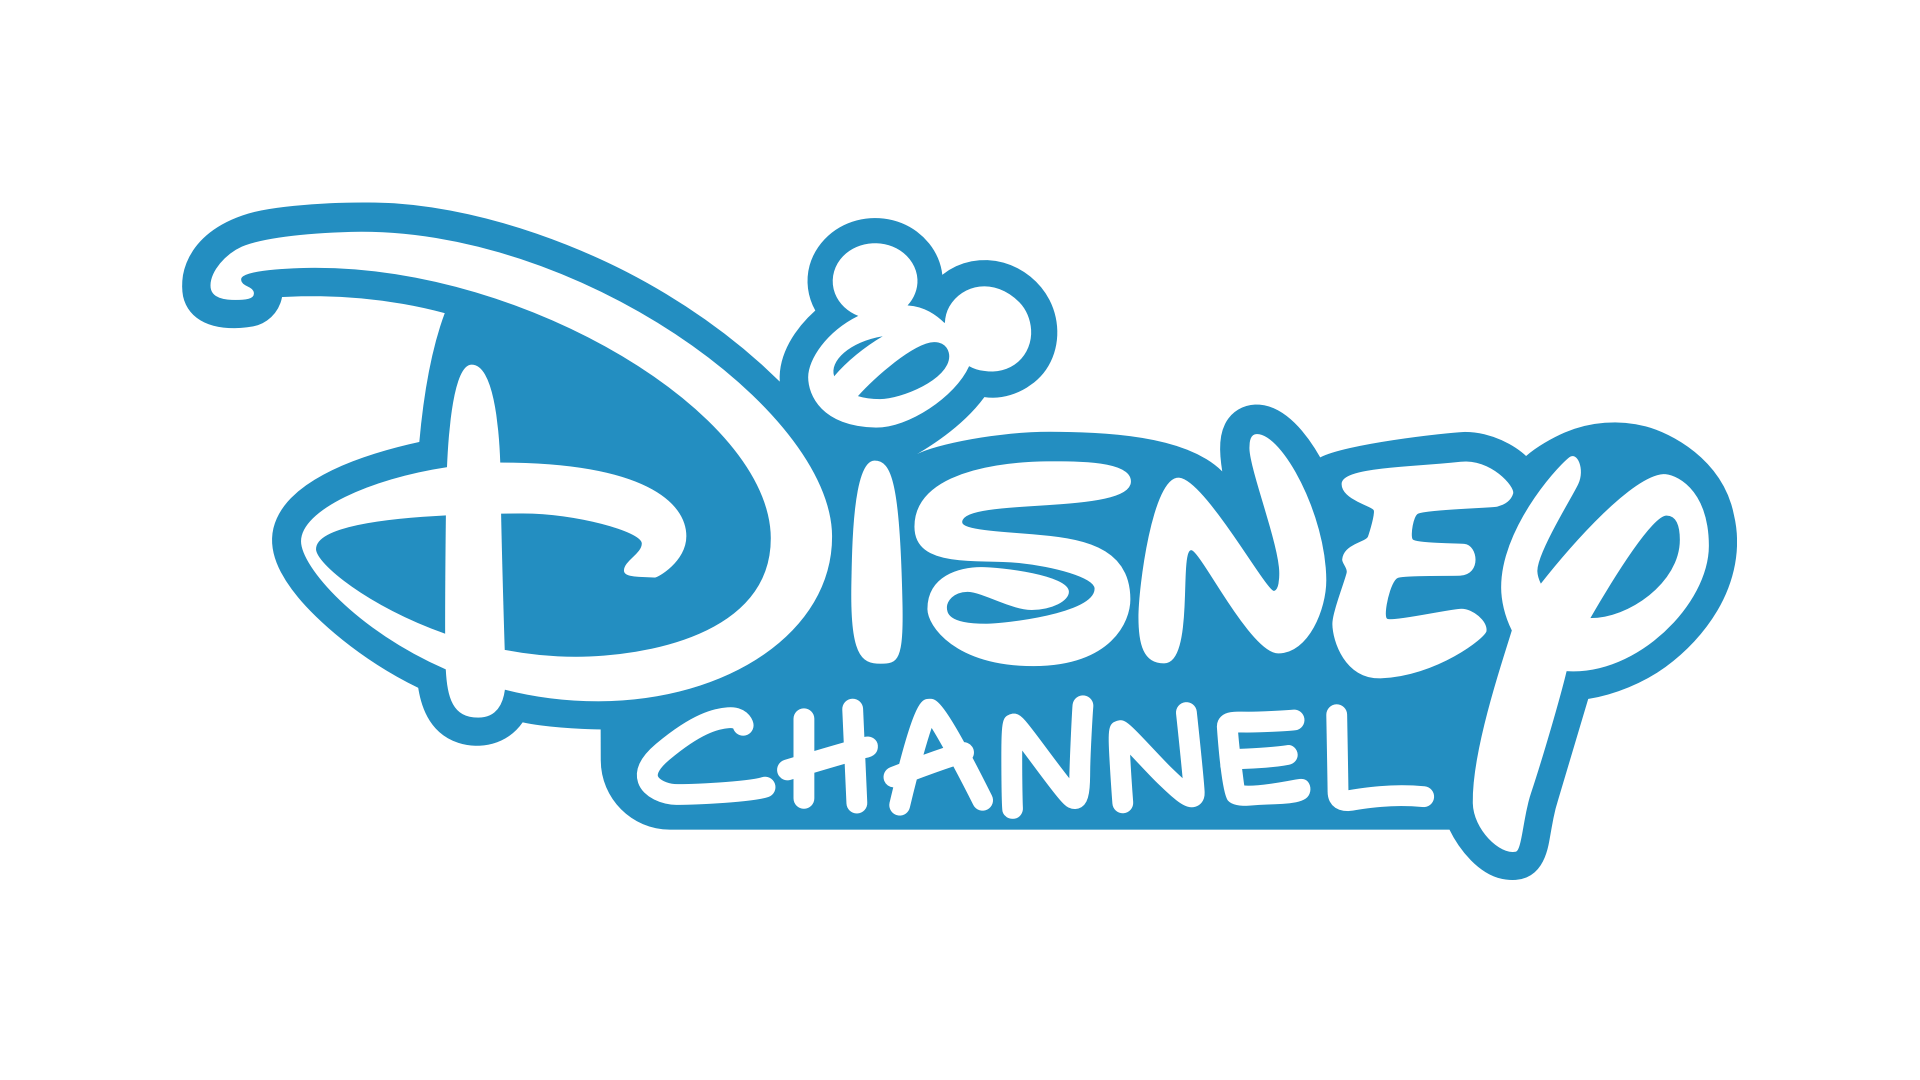 Канал дисней xd программа. Телеканал Дисней. Логотип Disney channel. Канал Дисней картинки. Дисней значок канала.